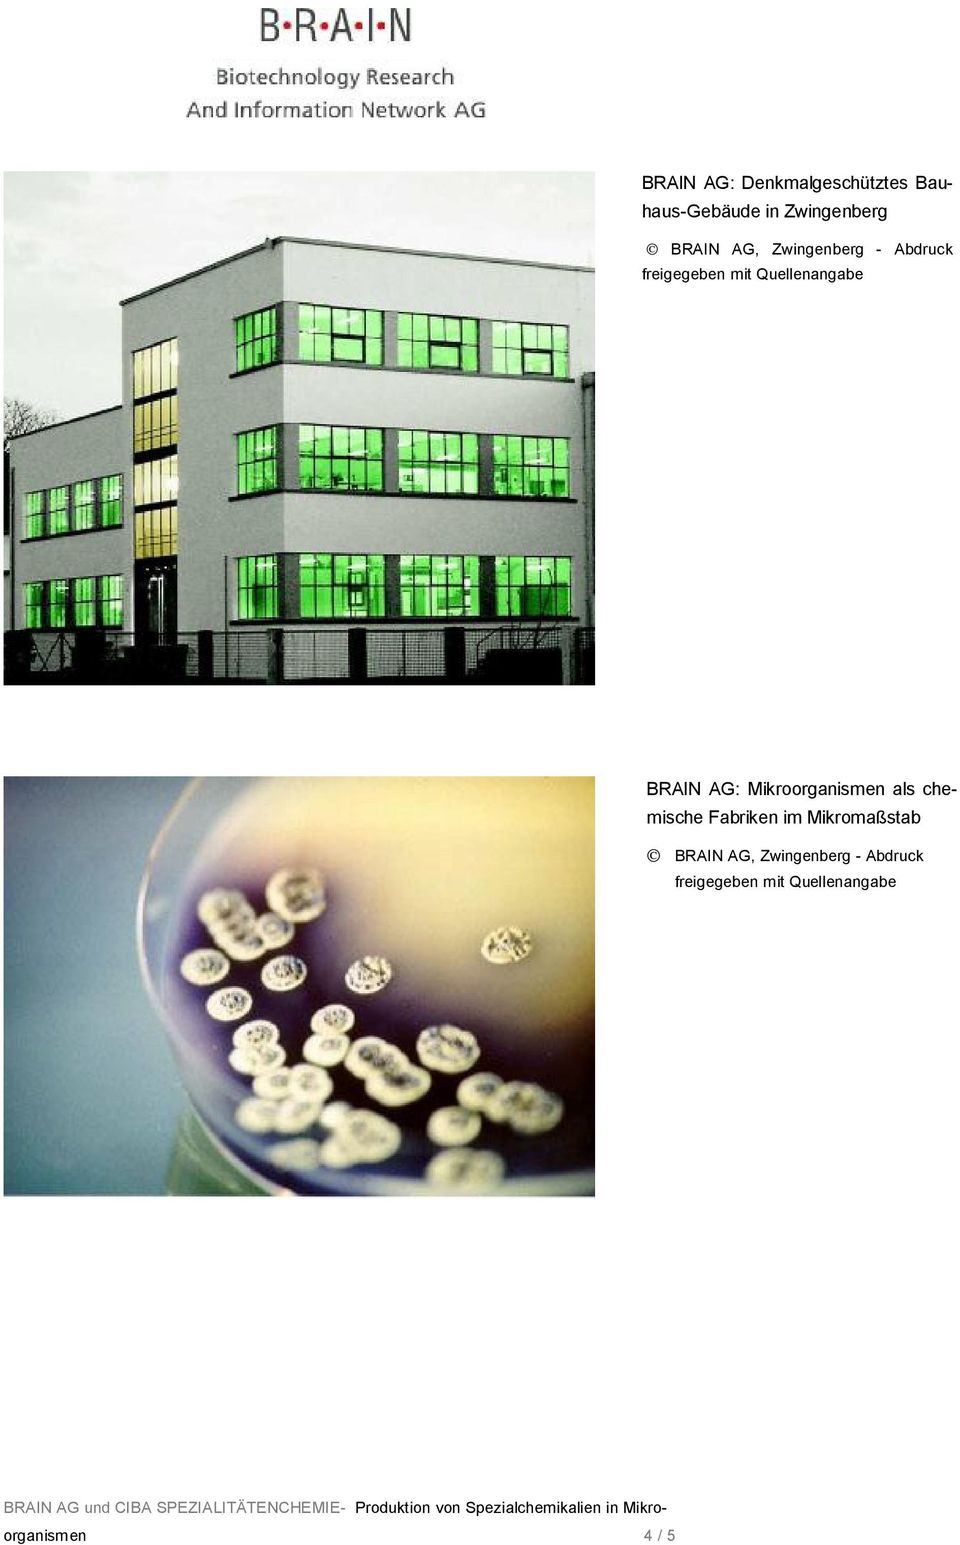 BRAIN AG: Mikroorganismen als chemische Fabriken